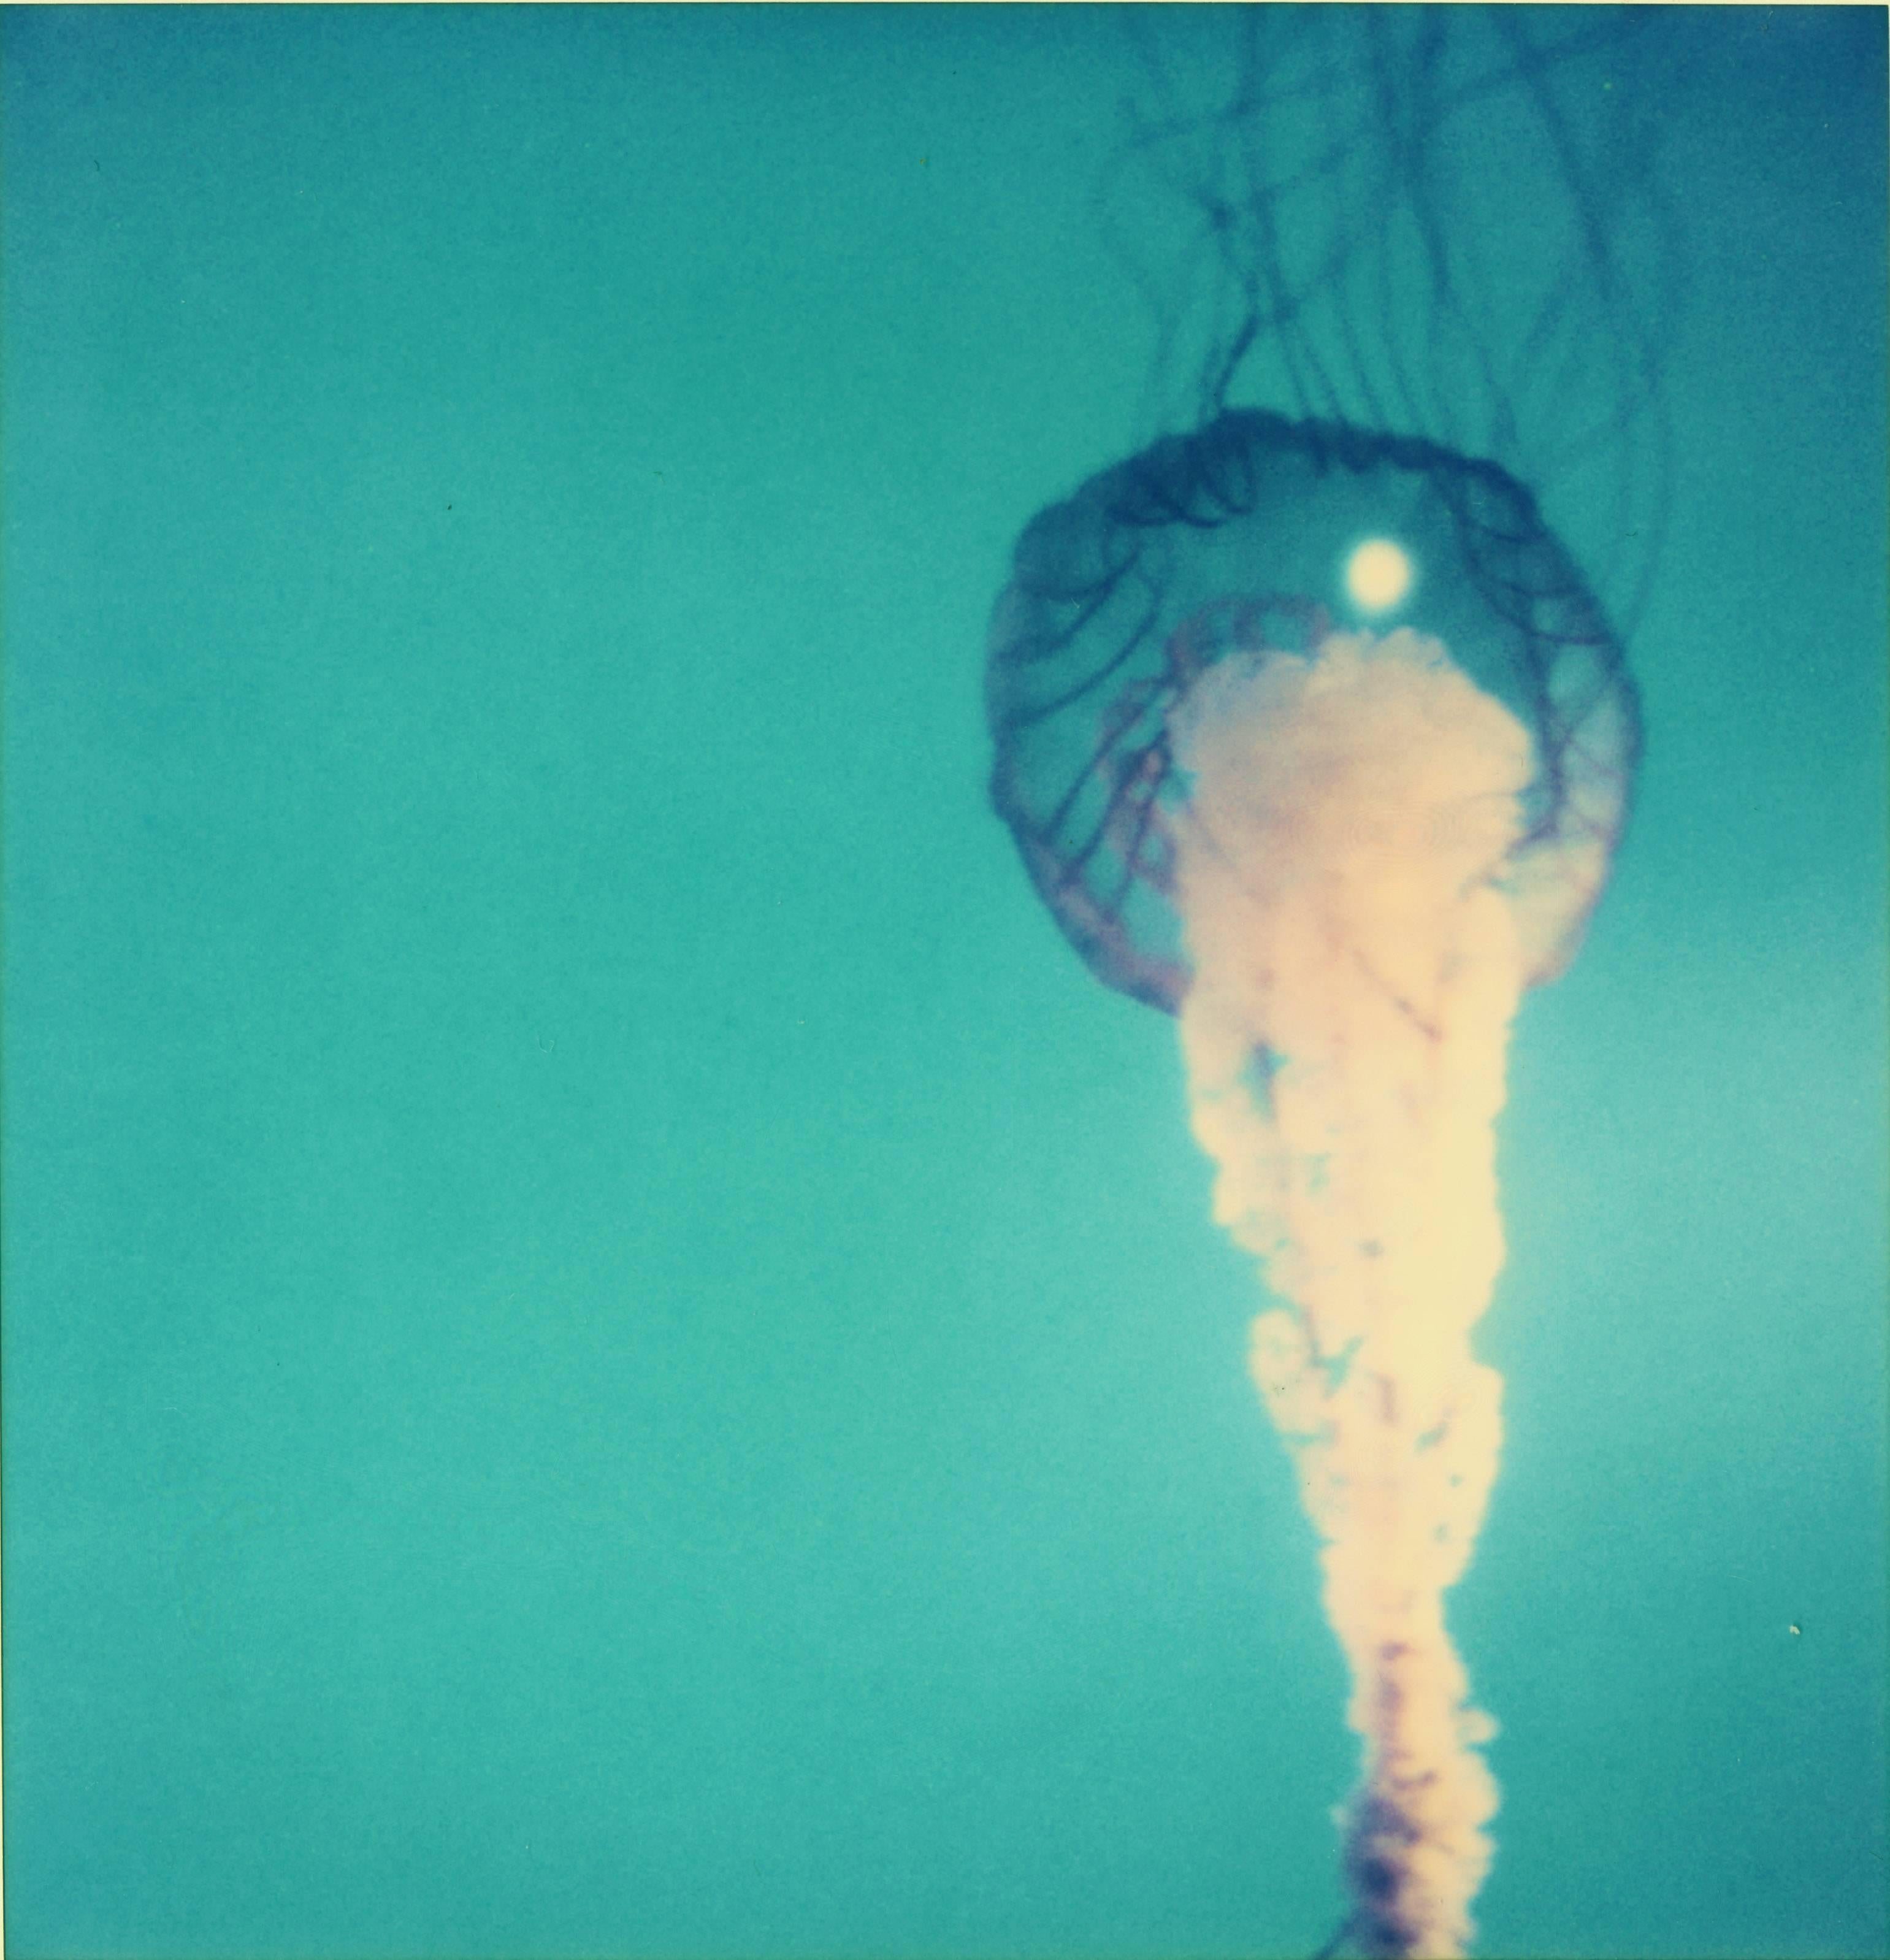 Stefanie Schneider Still-Life Photograph – Jelly Fish aus dem Film Stay, basiert auf einem Polaroid